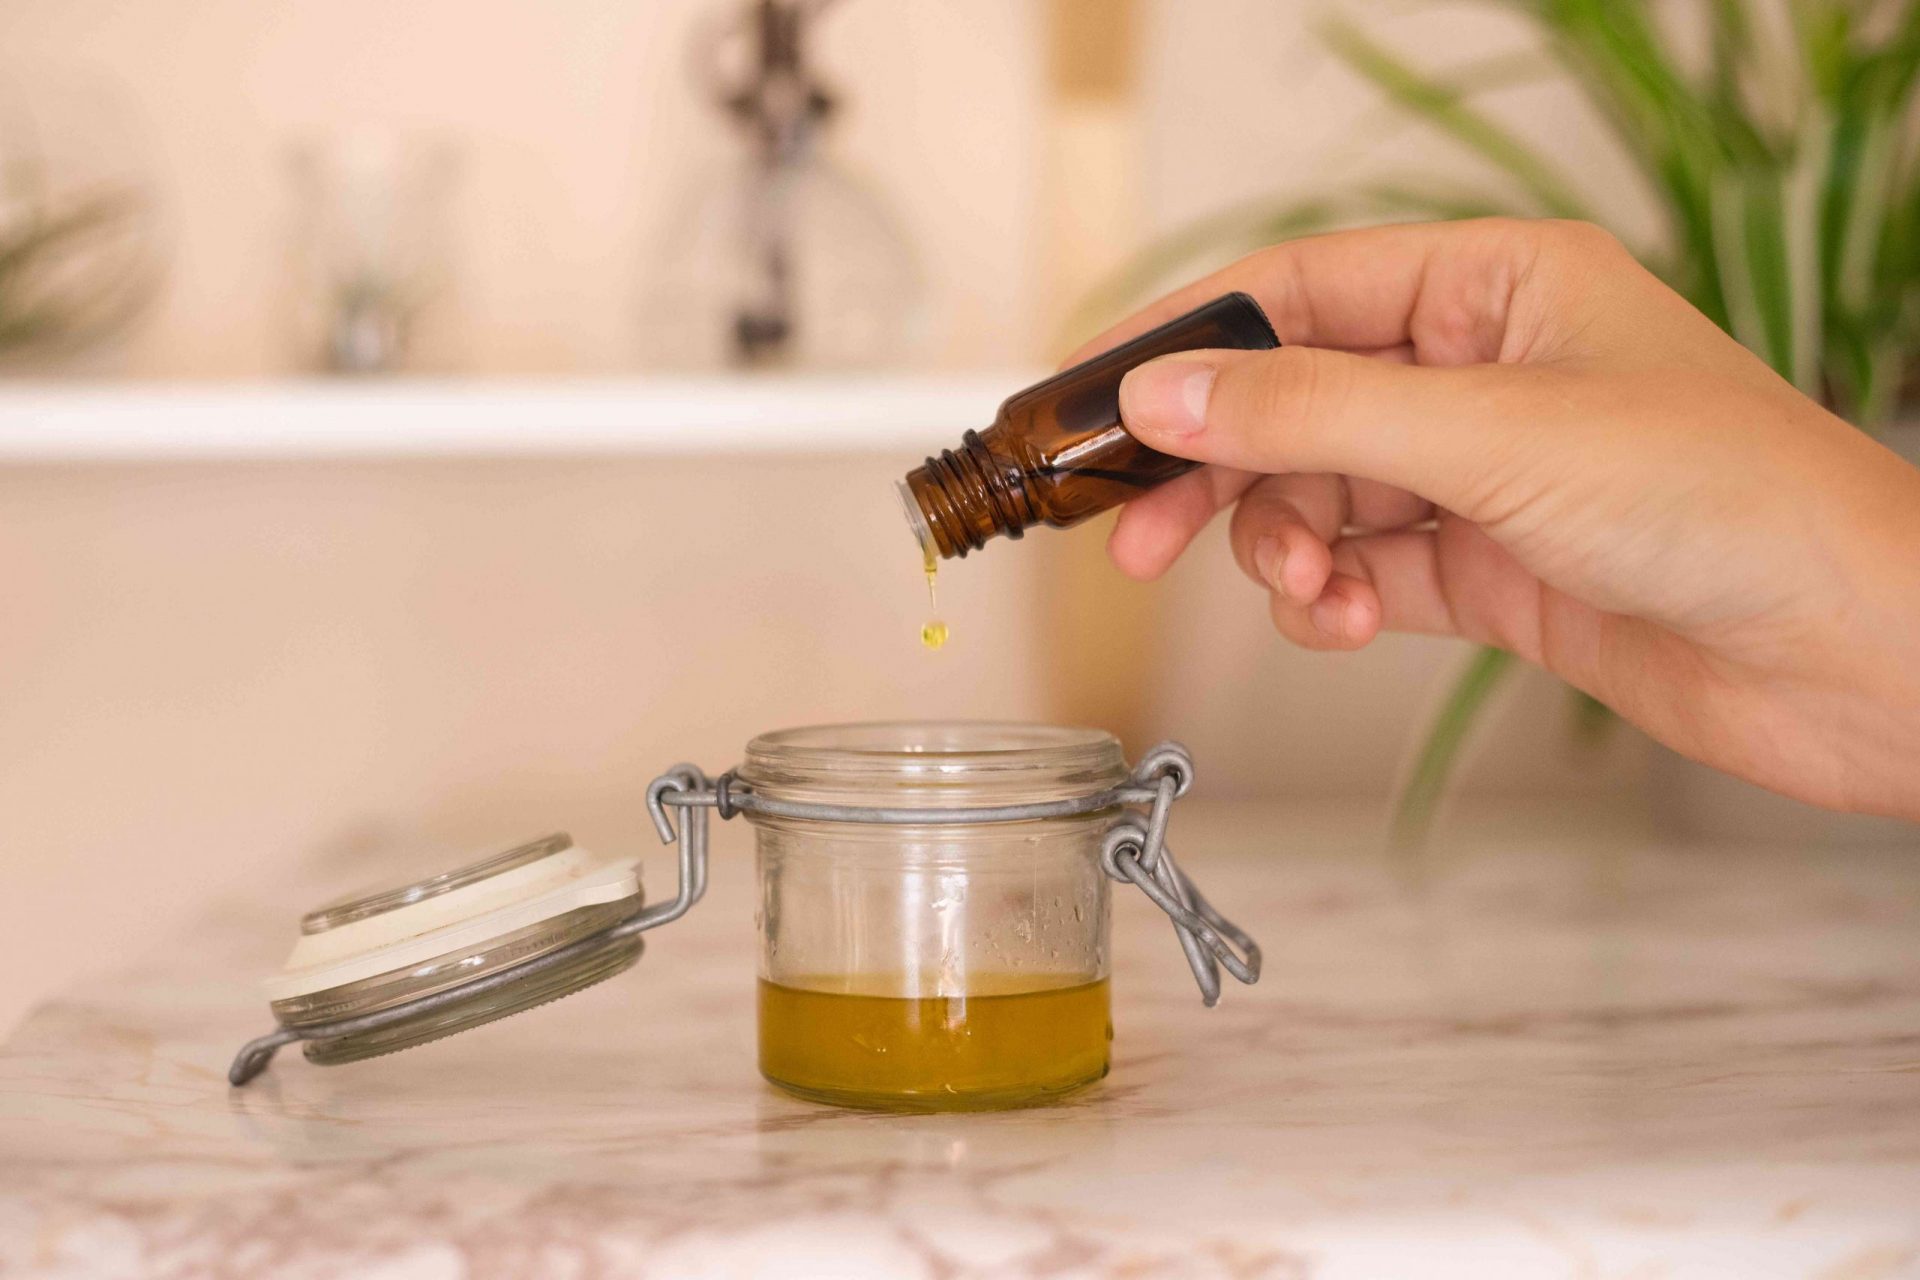 la mano añade una gota de aceite esencial al recipiente de cristal del aceite de oliva calentado